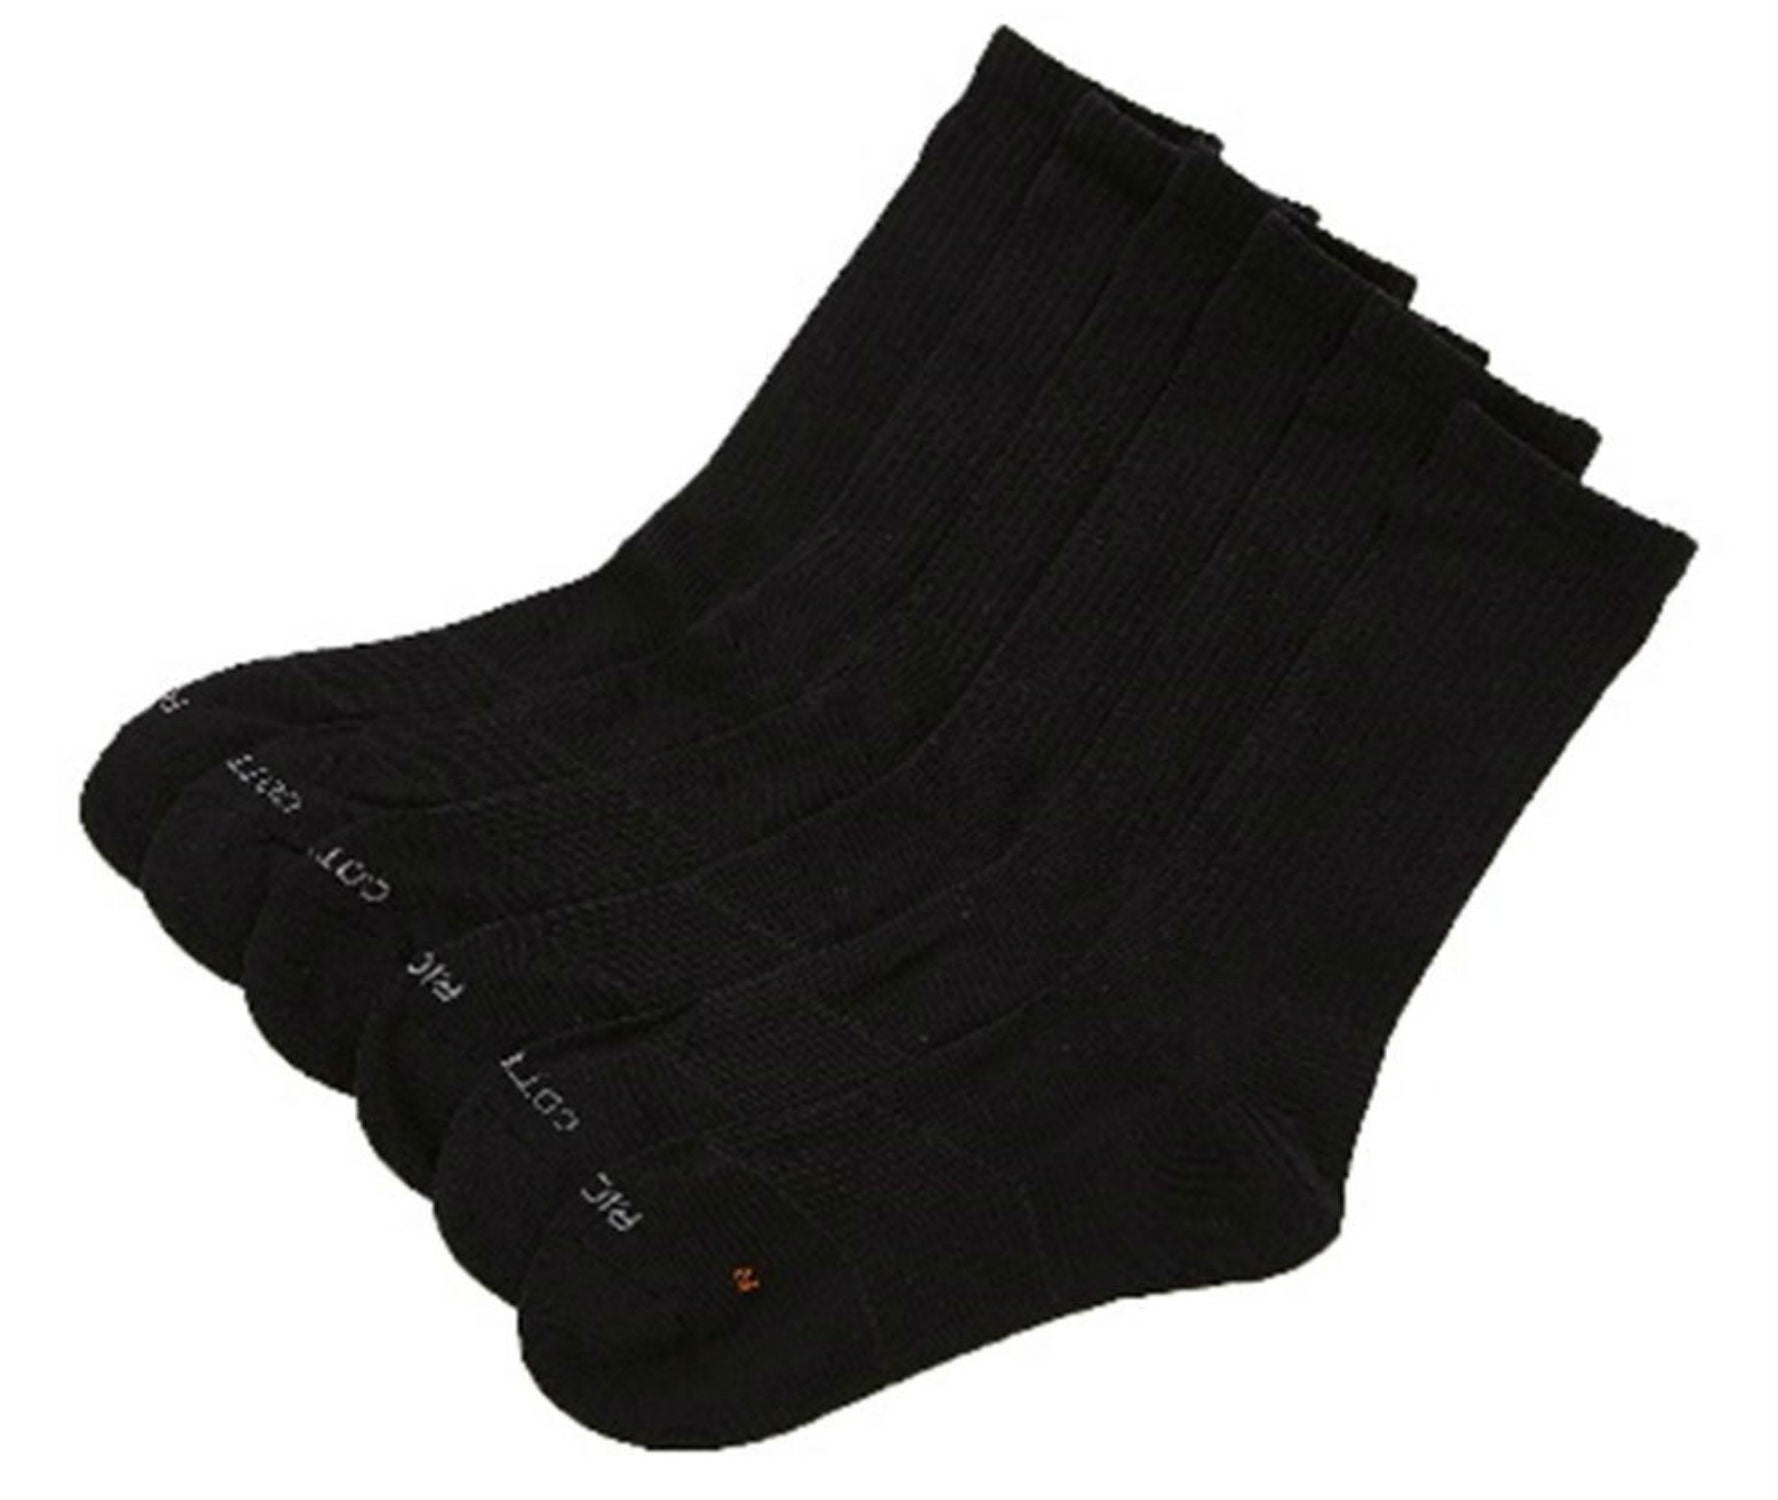 Rich Cotton Crew Cut Socks - DRI-FIT Cushioned Socks (Black)